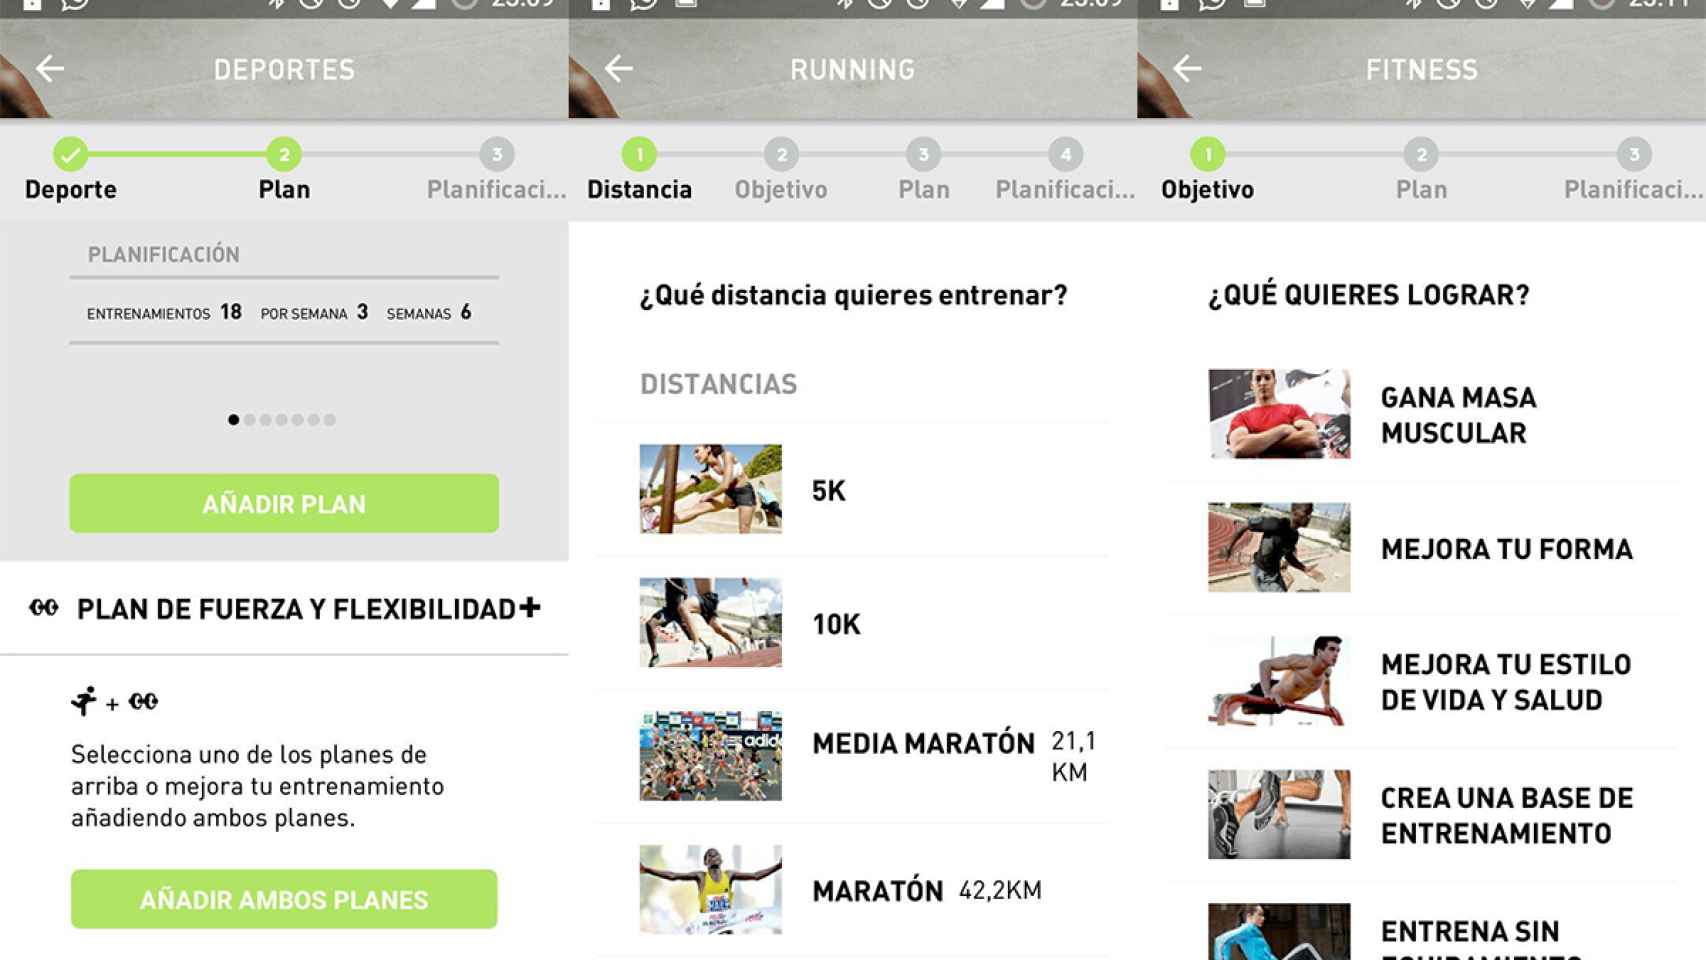 La nueva aplicación de Adidas para correr y entrenar es Train & Run